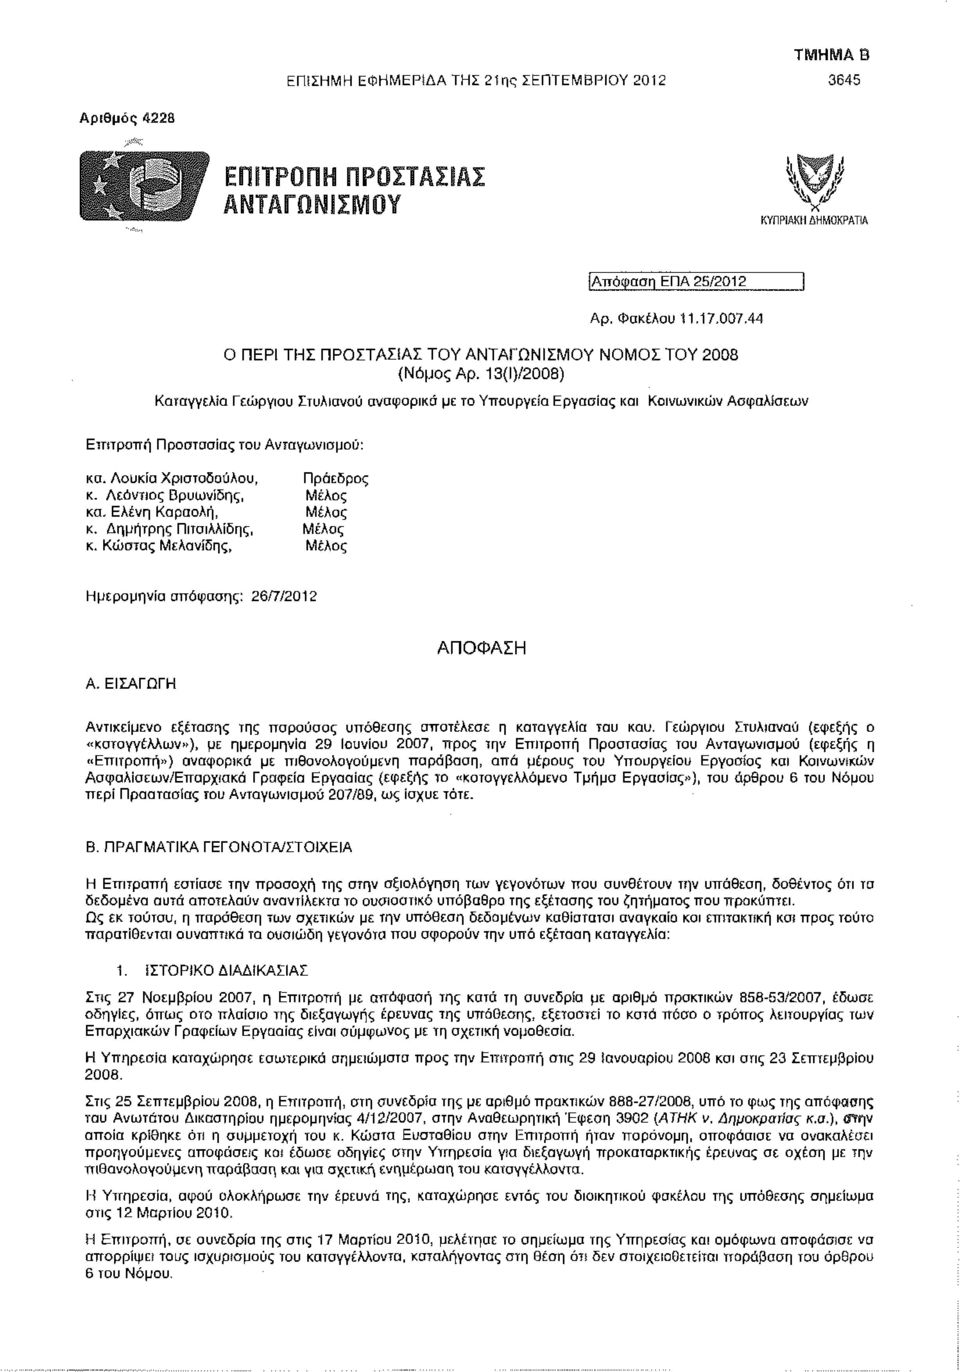 13{Ι)/2008) Καταγγελία Γεώργιου Στυλιανού αναφορικά με το Υπουργείο Εργασίας και Κοινωνικών Ασφαλίσεων Επιτροπή Προστασίας του Ανταγωνισμού: κα. Λούκια Χριοτοδούλου, Πρόεδρος κ.